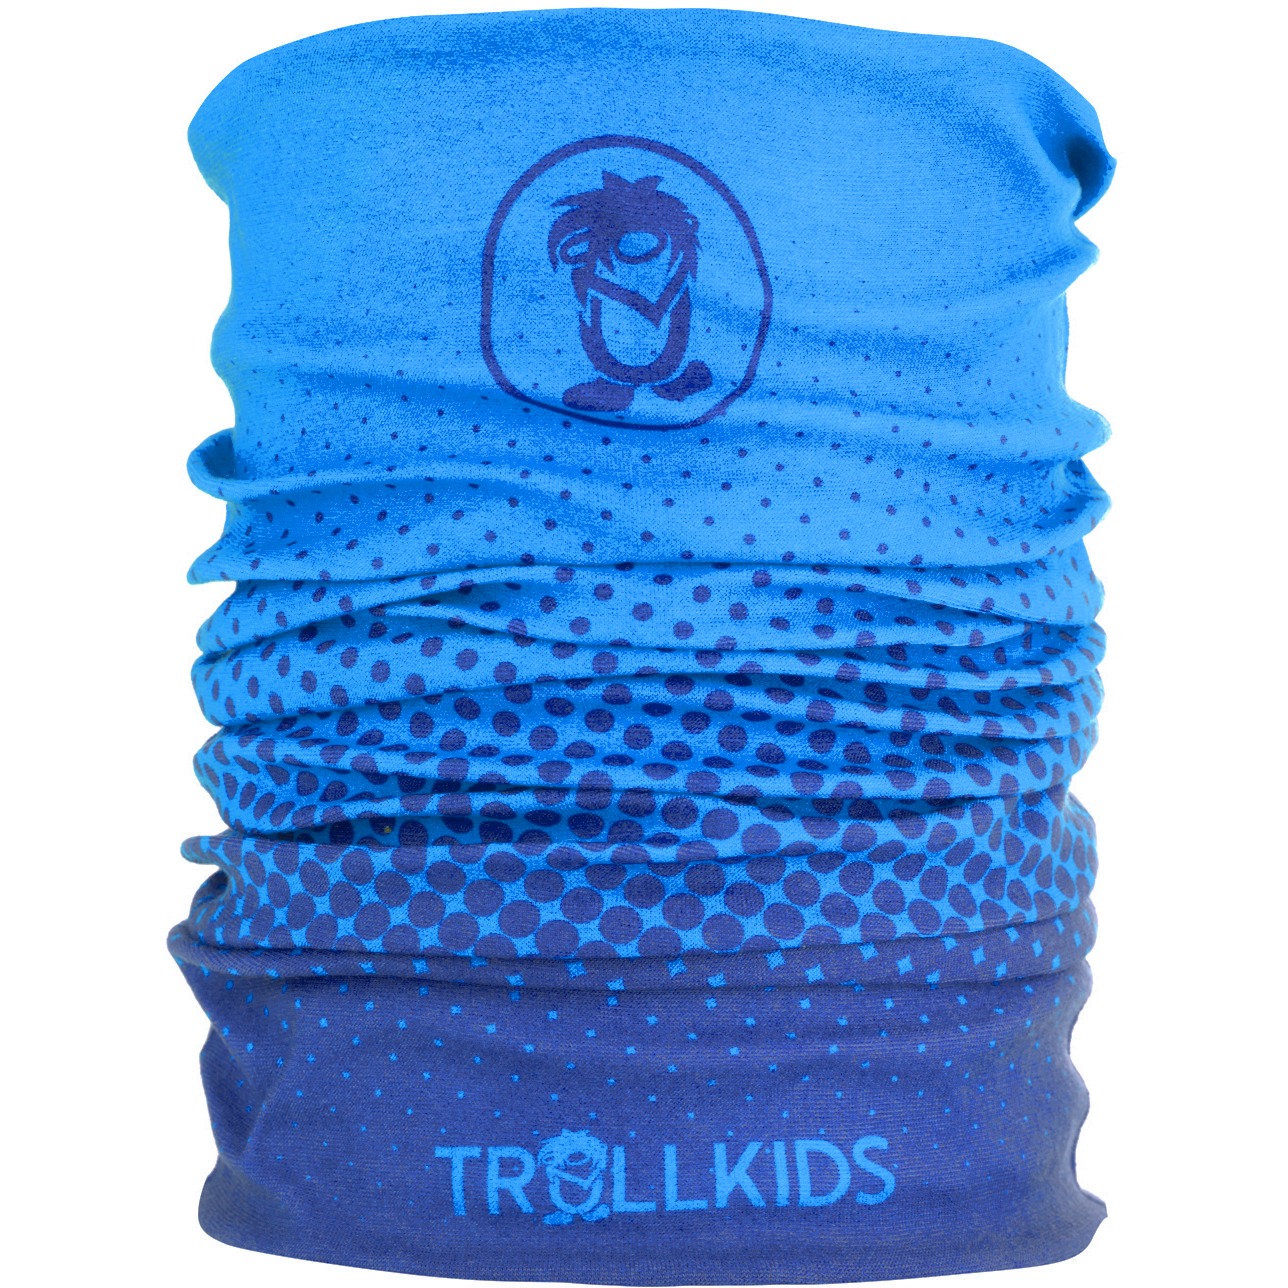 Produktbild von Trollkids Pointilism Kinder Multifunktionstuch - Navy/Medium Blue